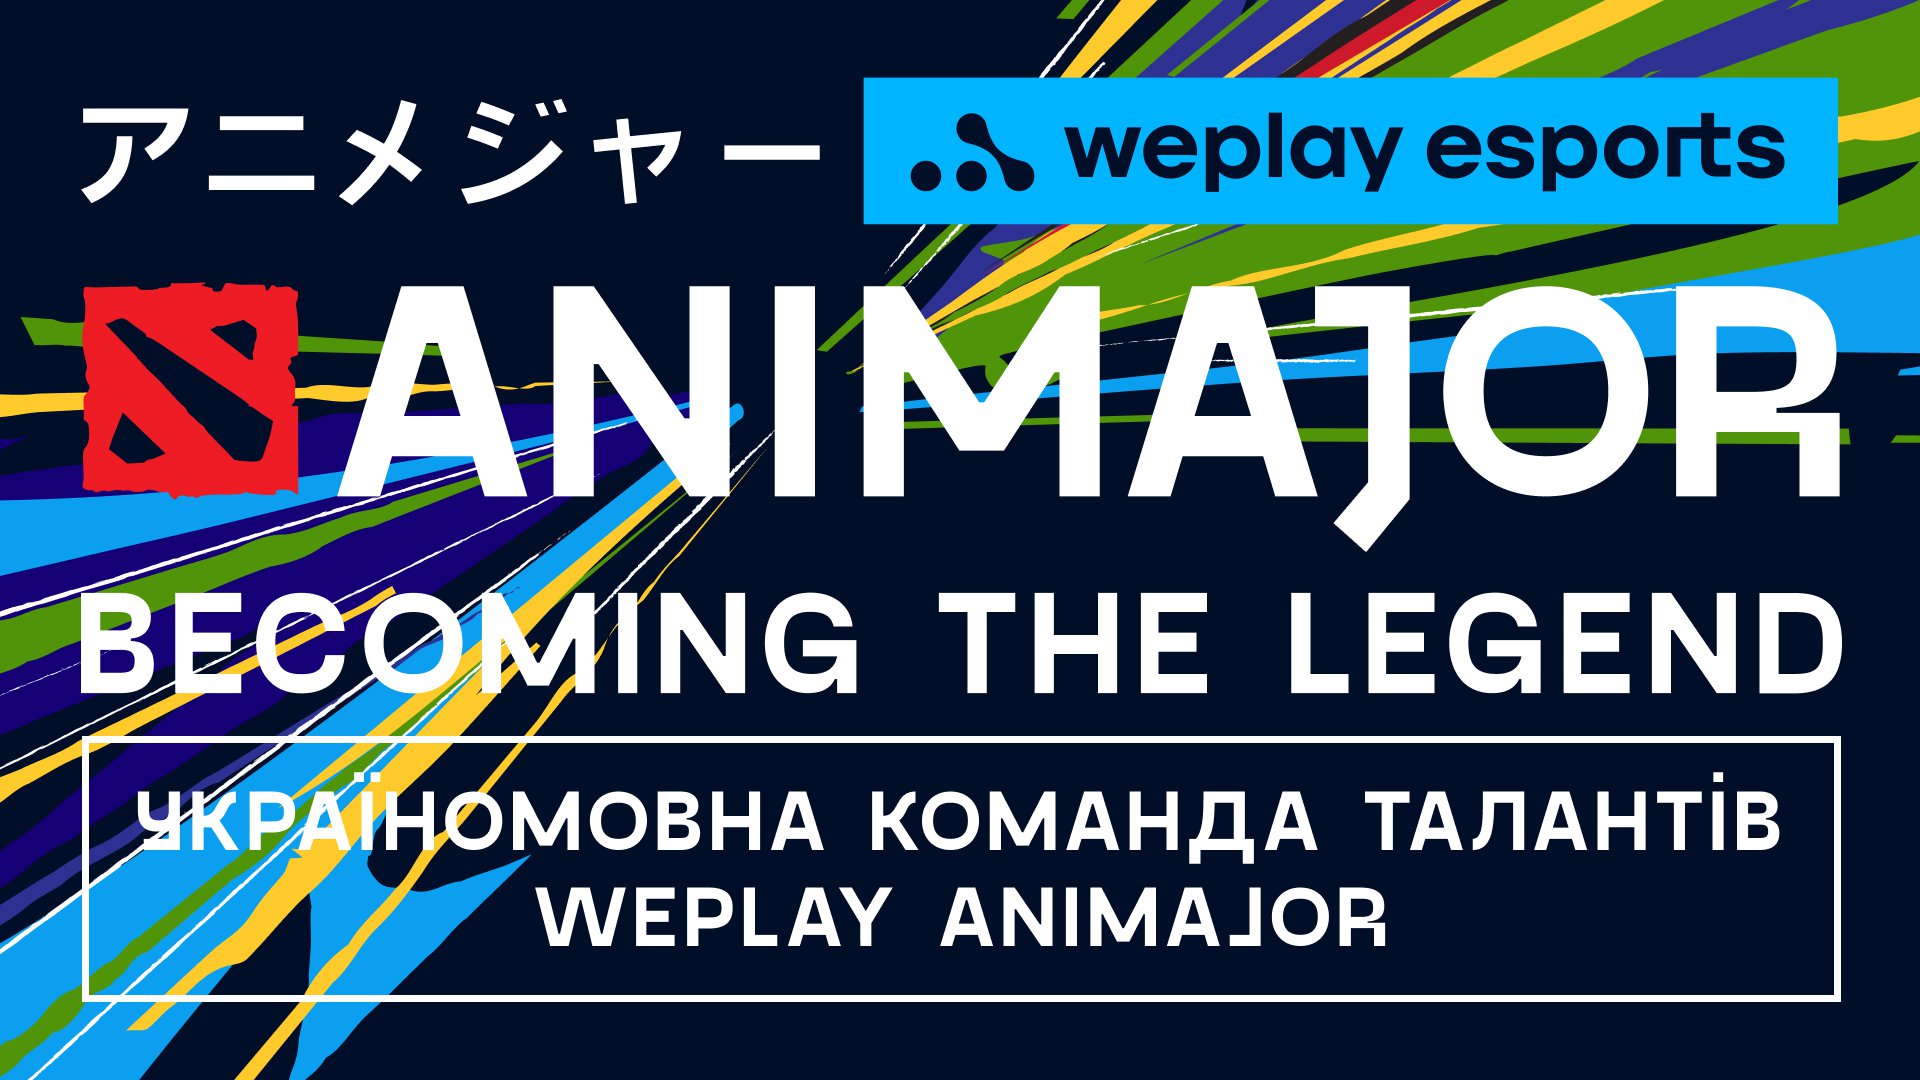 Оголошена  україномовна команда талантів WePlay AniMajor. Зображення: WePlay Esports